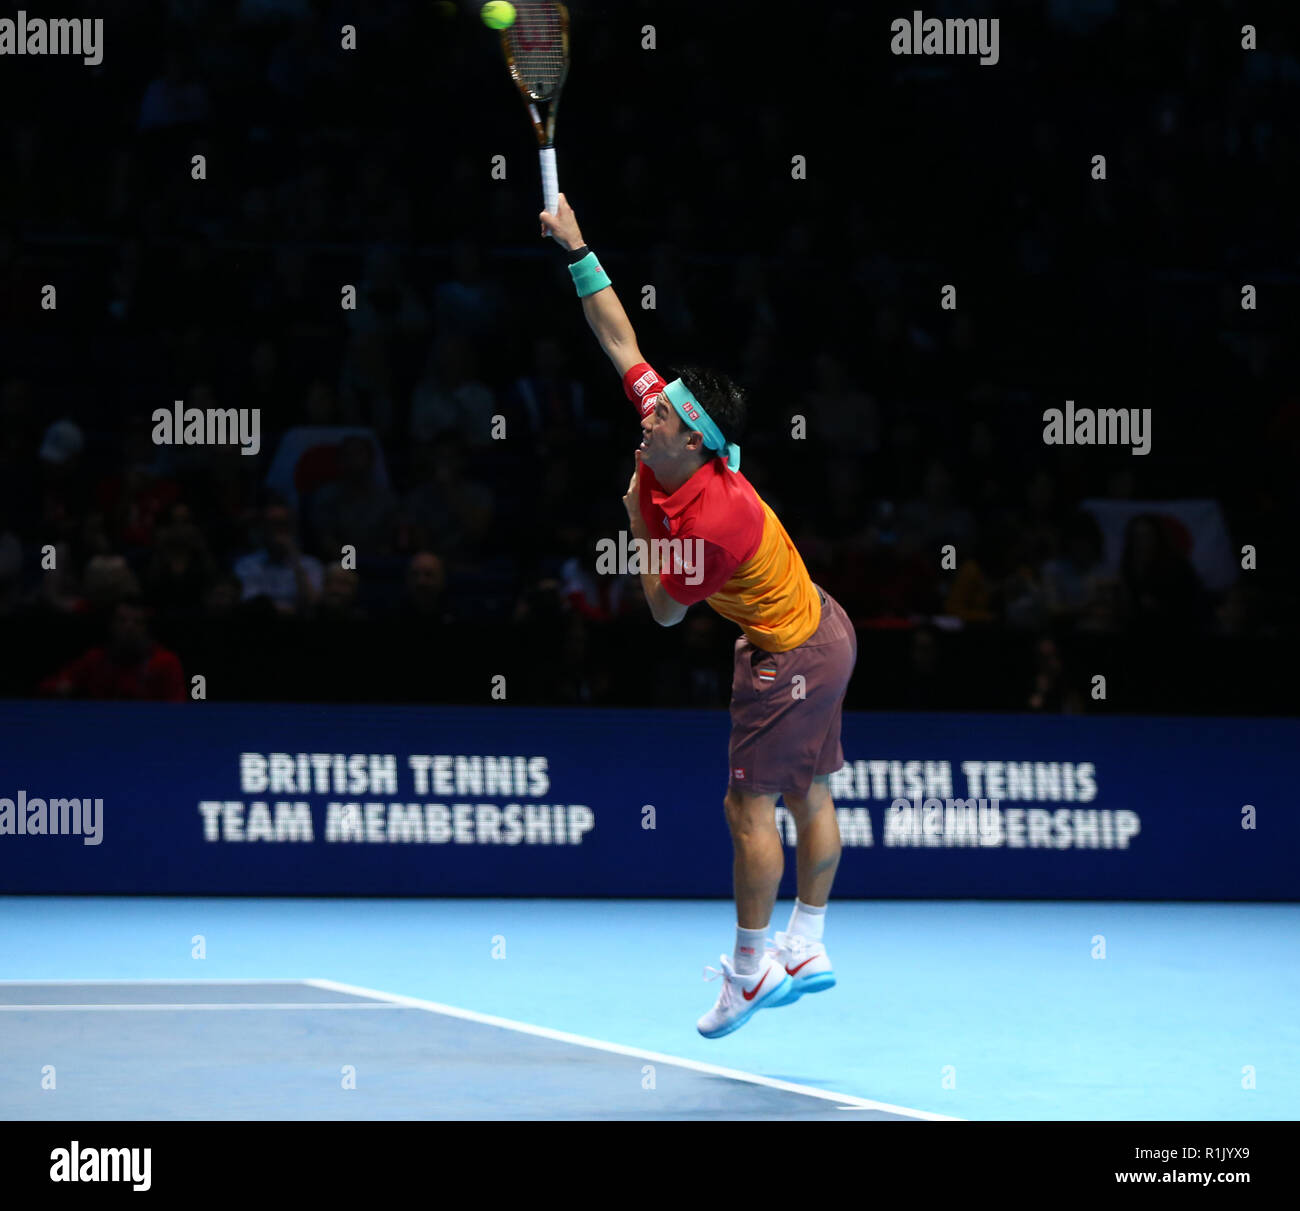 Londres, Royaume-Uni. 13 novembre, 2018. Kei Nishikori (JPN) et Kevin Anderson (RSA) au cours de la troisième journée des célibataires de l'ATP World Tour Finals Nitto a joué à l'O2 Arena, Londres le 13 novembre 2018. Action Sport Crédit Photo Banque D'Images